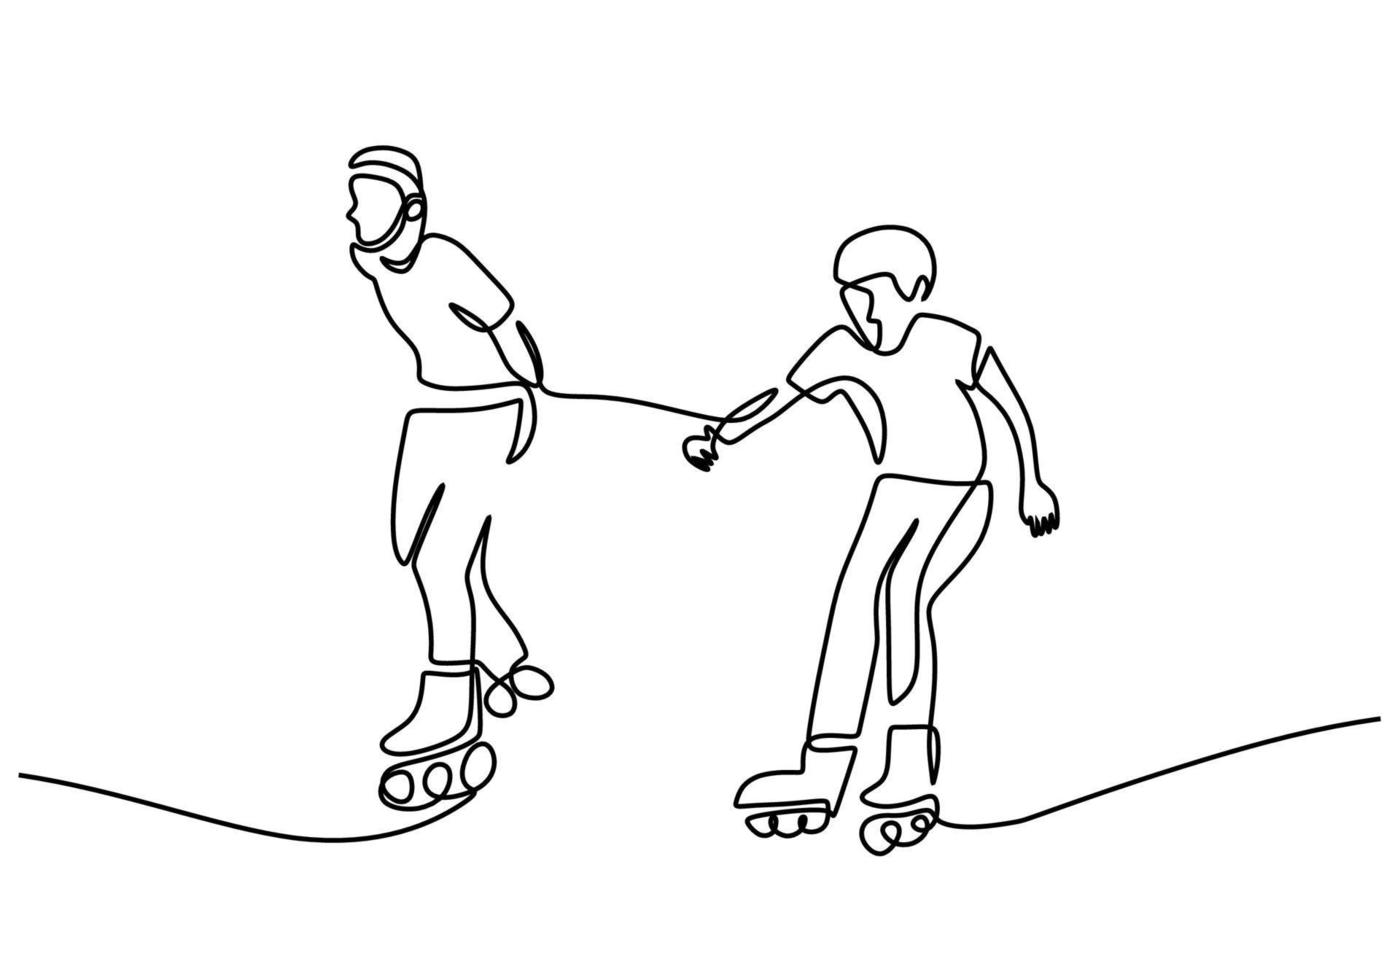 una sola línea continua de padre jugando patines con su hijo vector